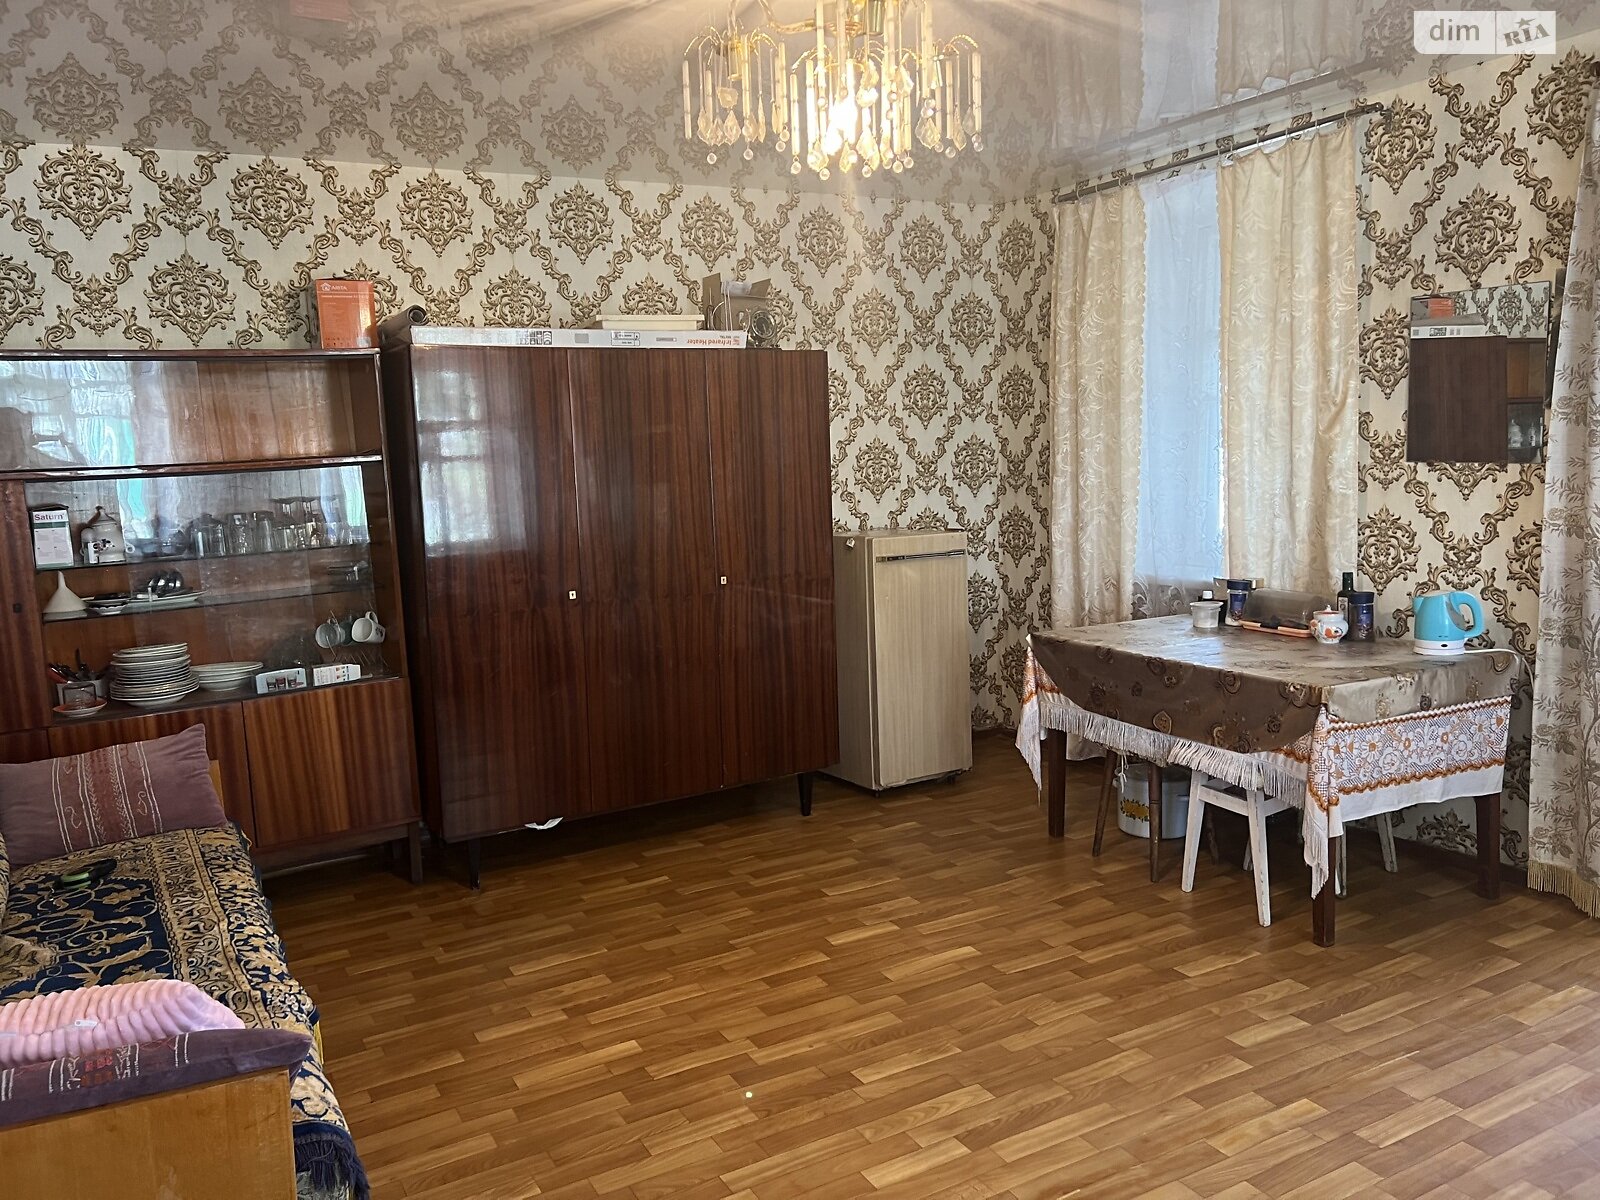 Продажа части дома в Днепре, проспект Свободы 39, район Новокодакский, 2 комнаты фото 1